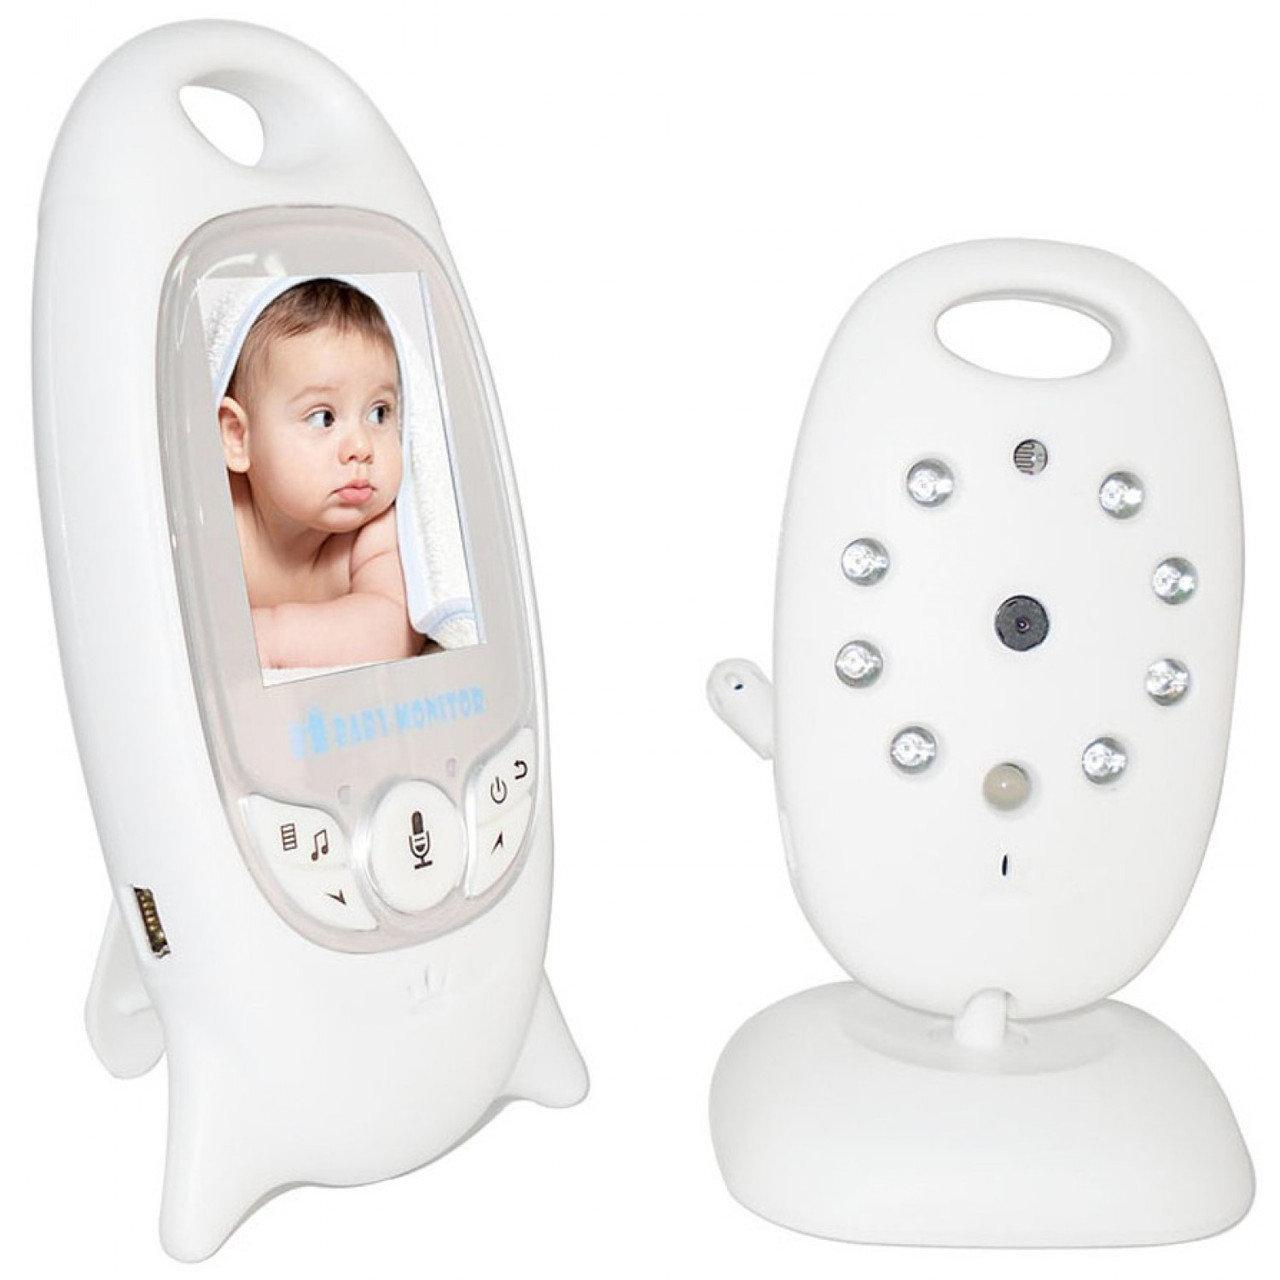 Відеоняня Baby Monitor VB - 601 на акумуляторах з двостороннім зв'язком, мелодіями і термометром, фото 1